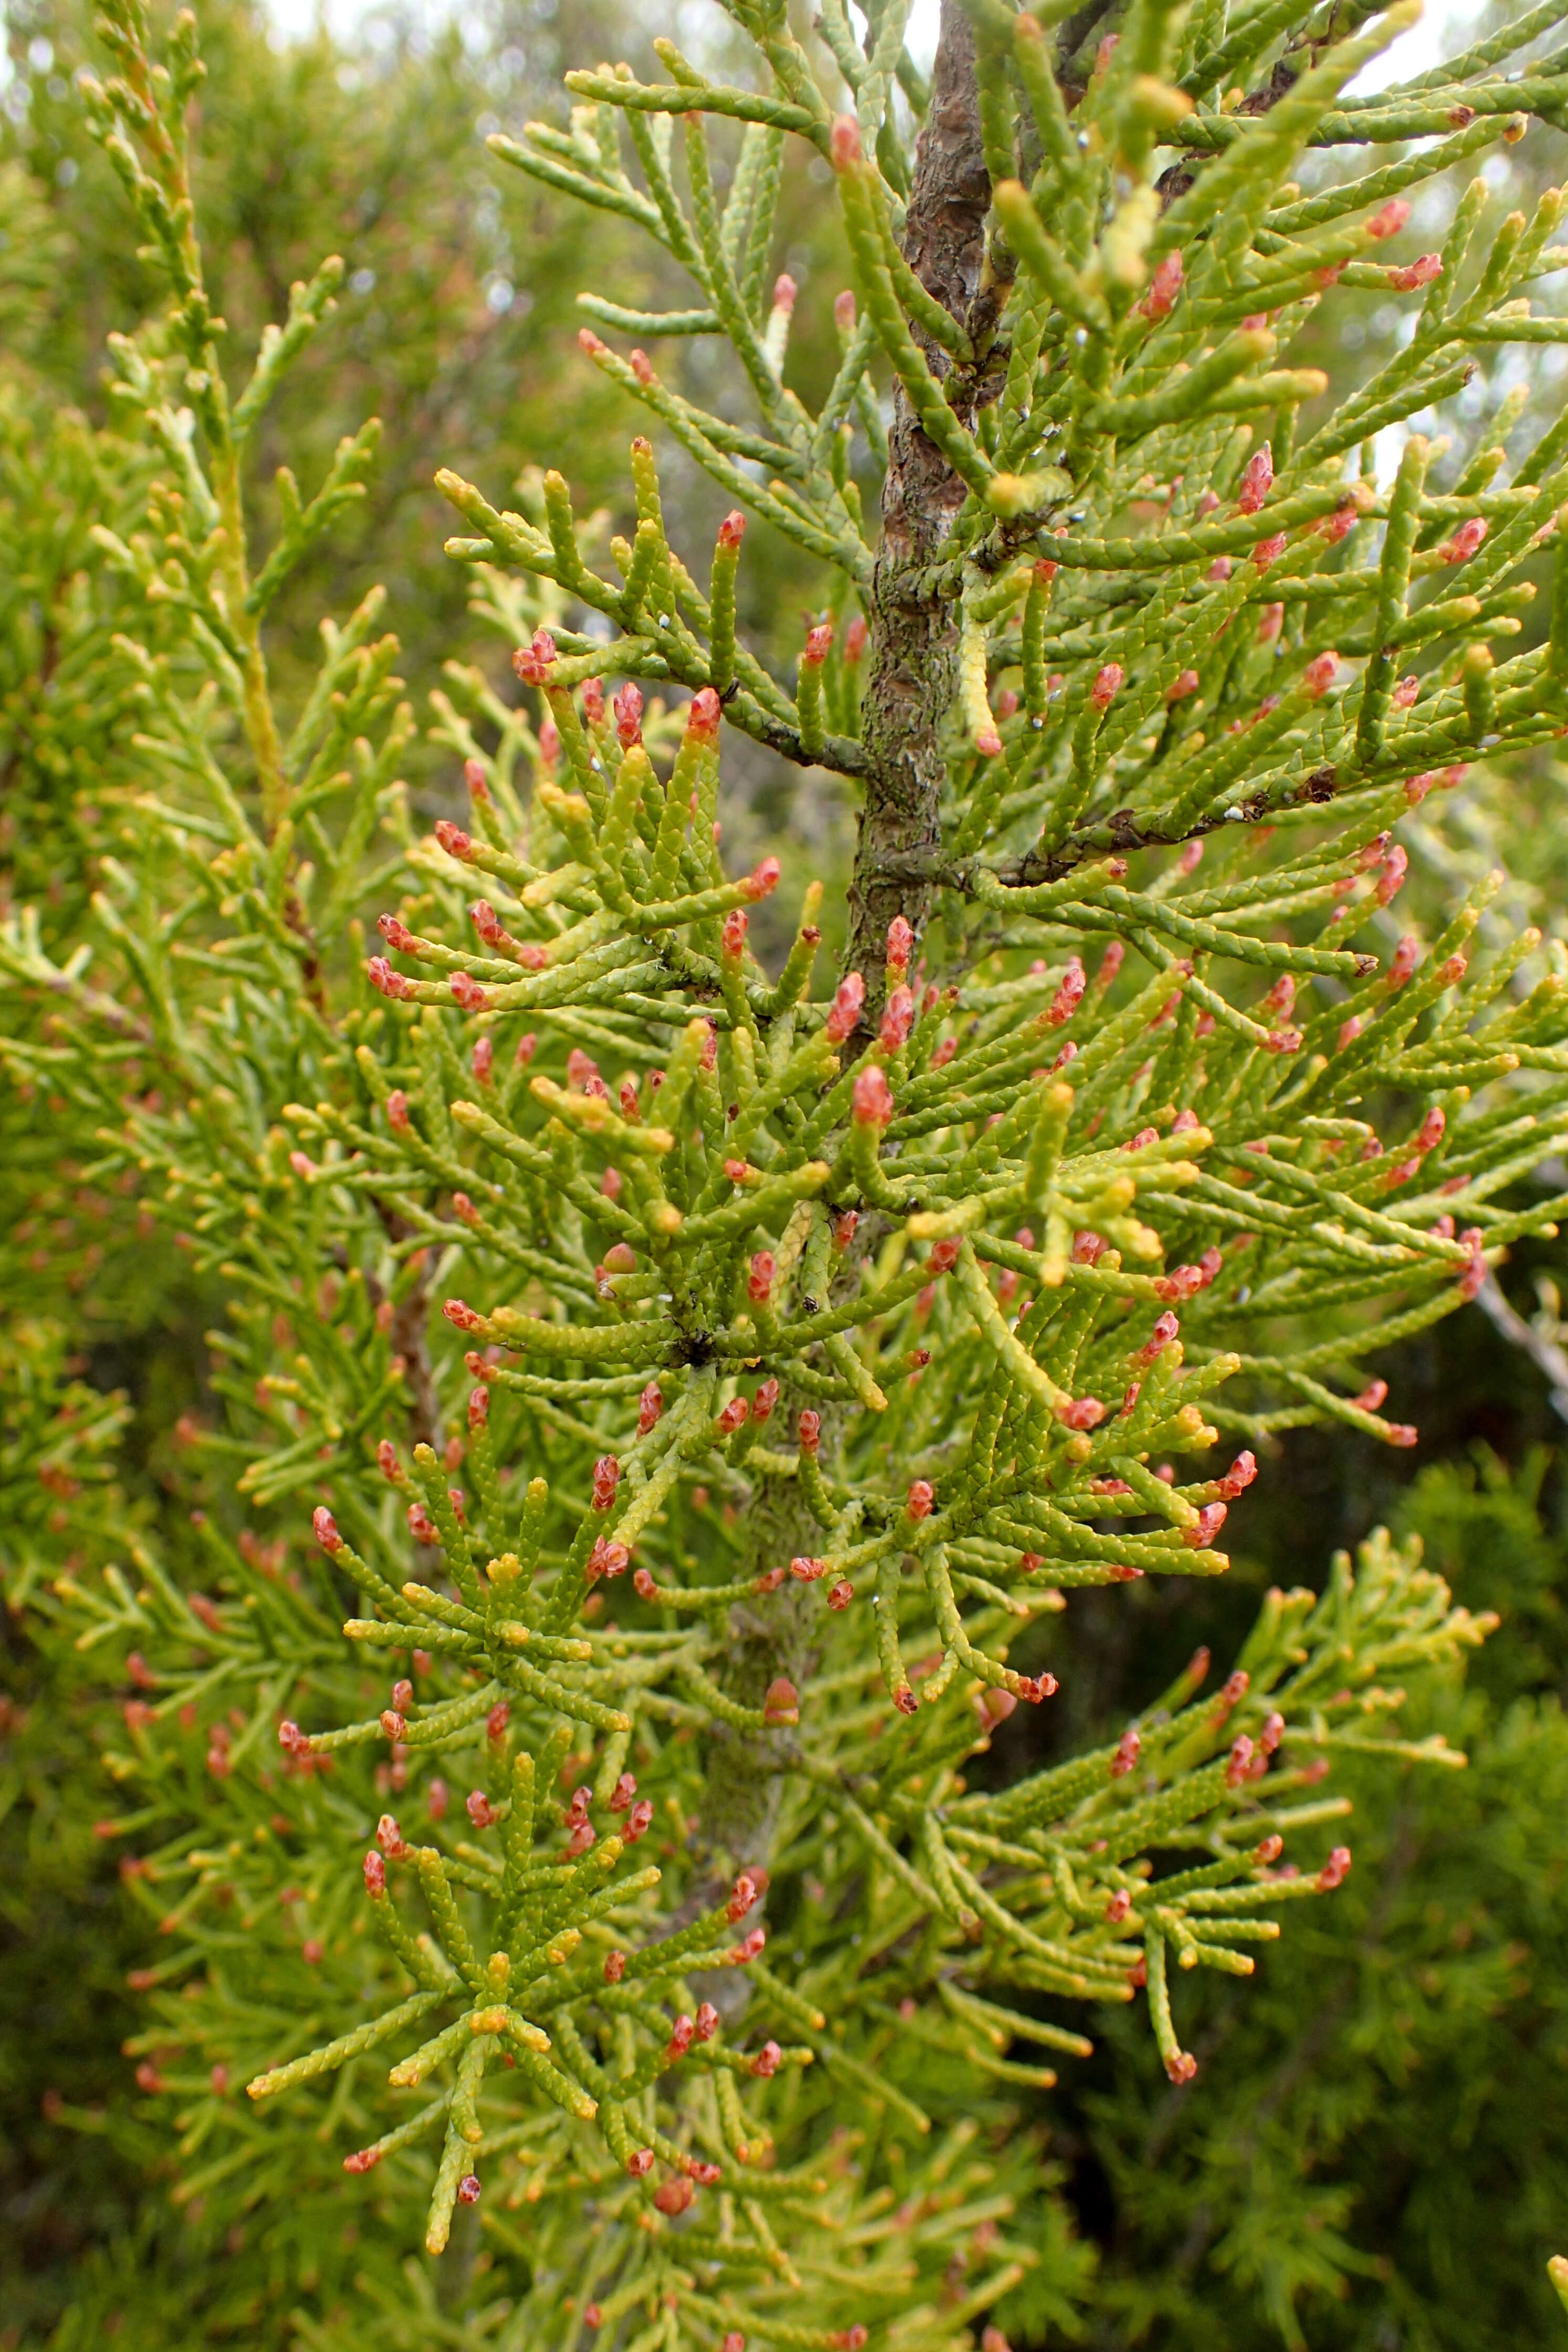 Image of Bog Pine